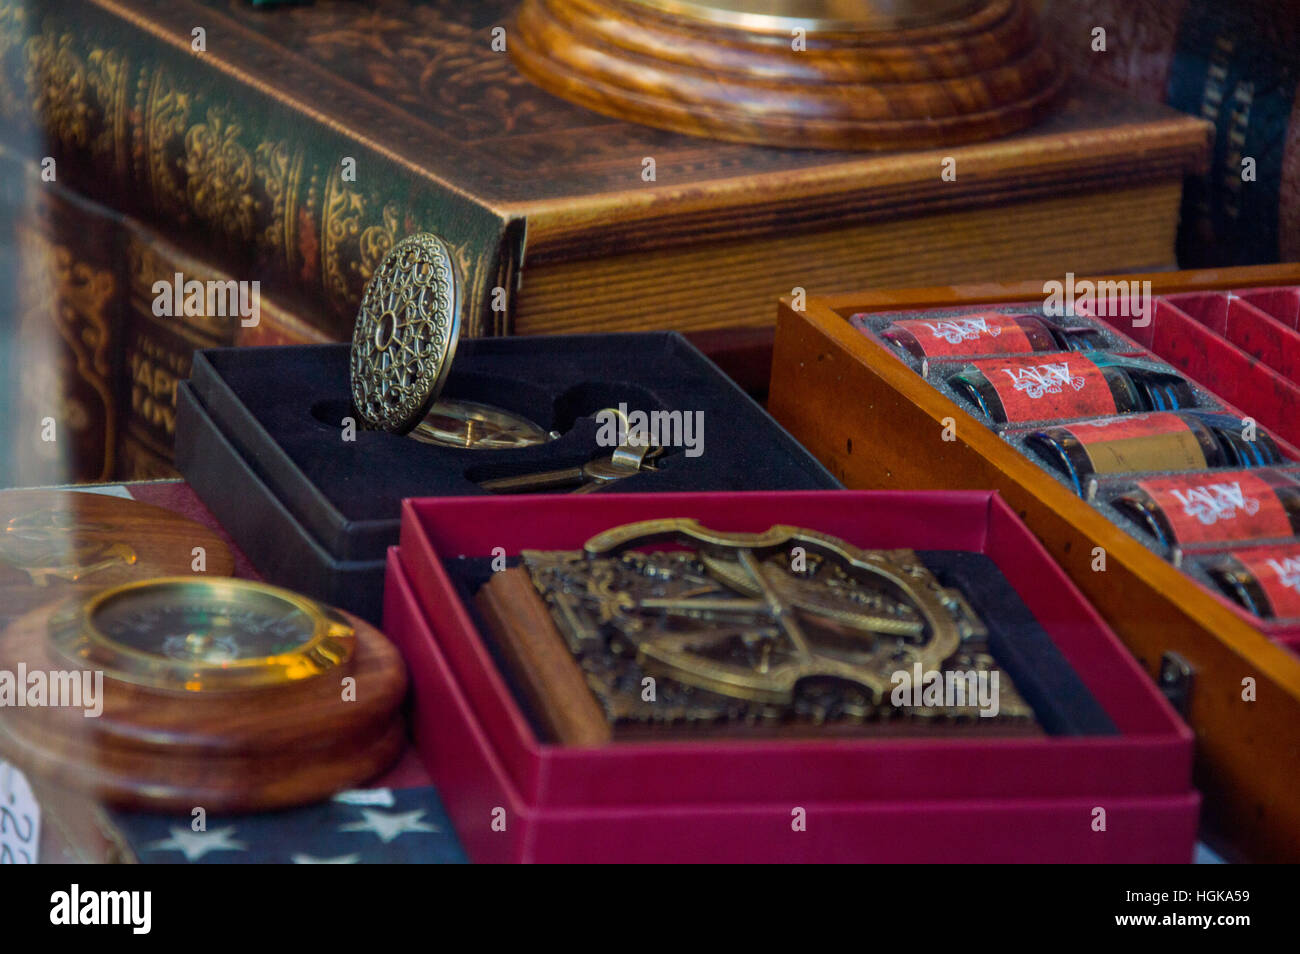 Medalla de moneda oficina vintage reloj de bolsillo del siglo XIX tint libros antiguos de madera oro viejo boxex Mostrar tabla de ventana para la venta Foto de stock